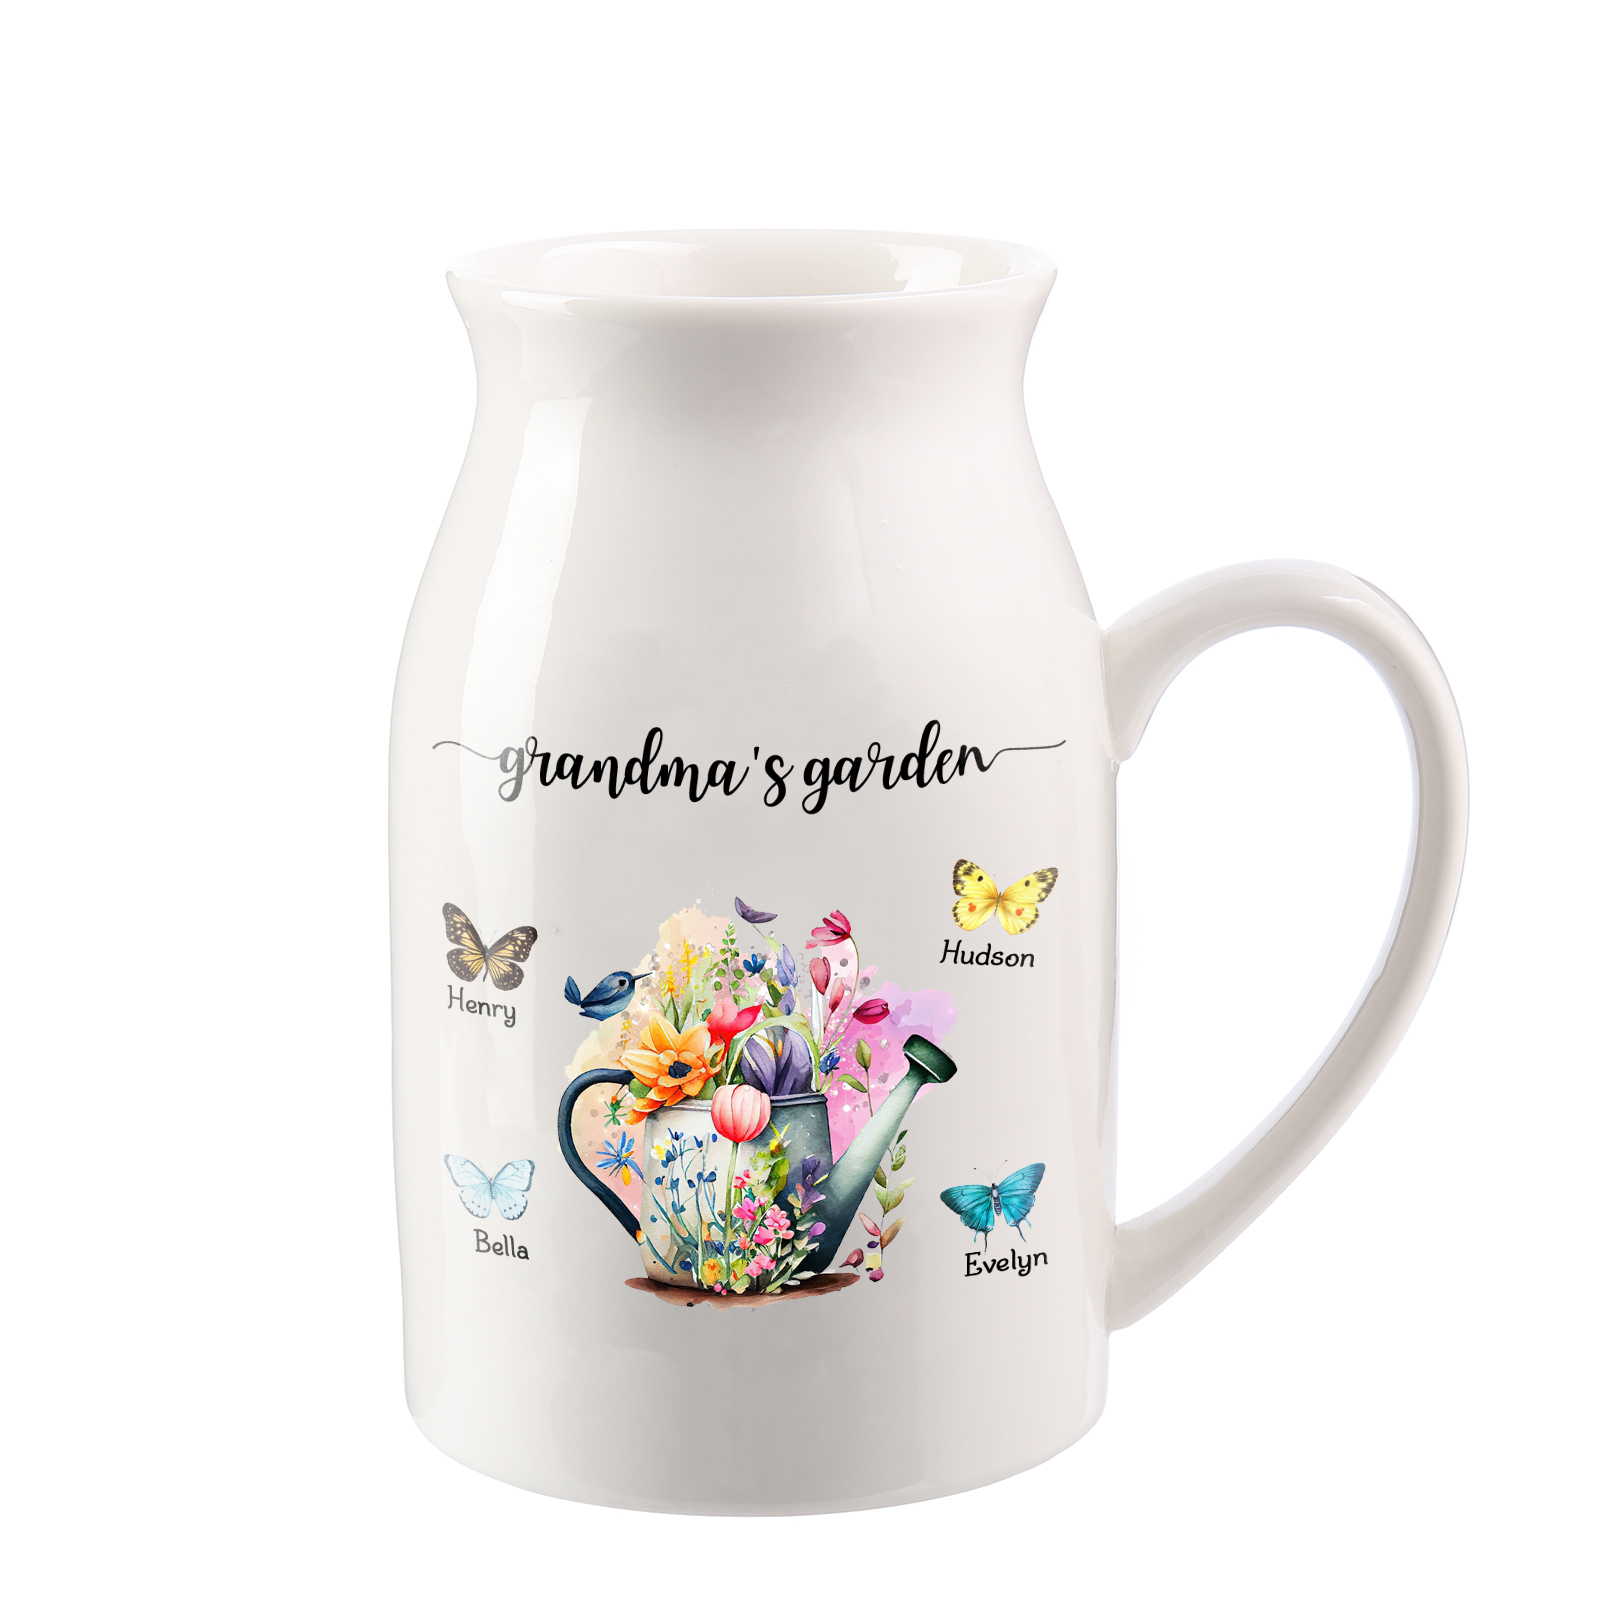 4 Names - Personalized Name "Grandma's Garden" Ceramic Vase as a Gift for Grandma